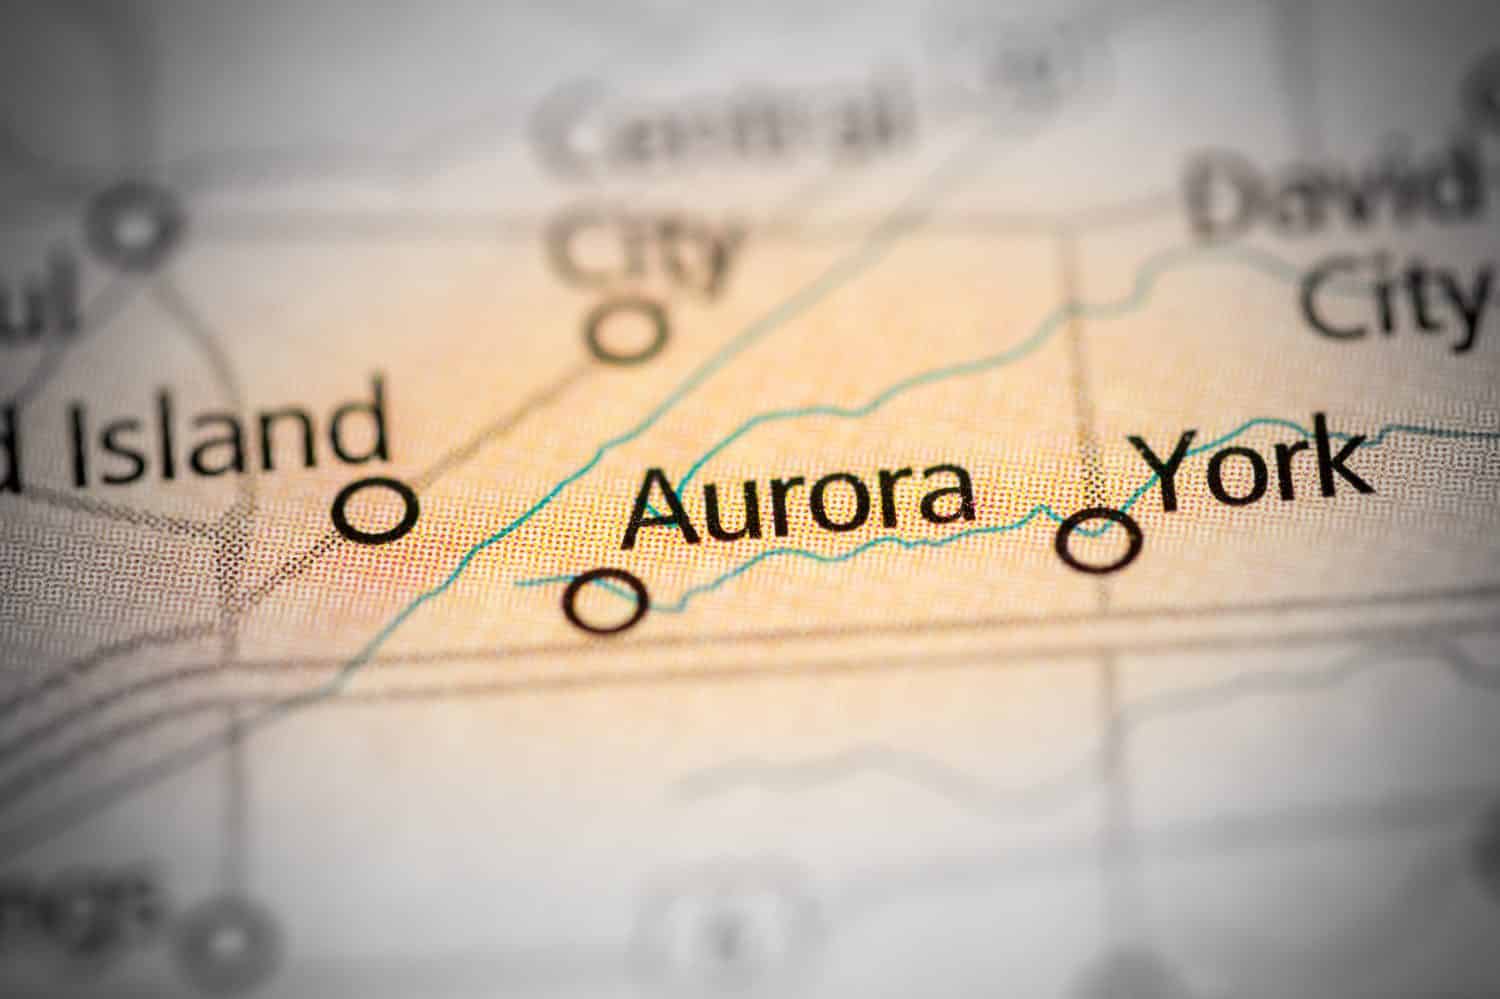 Aurora. Nebraska. USA